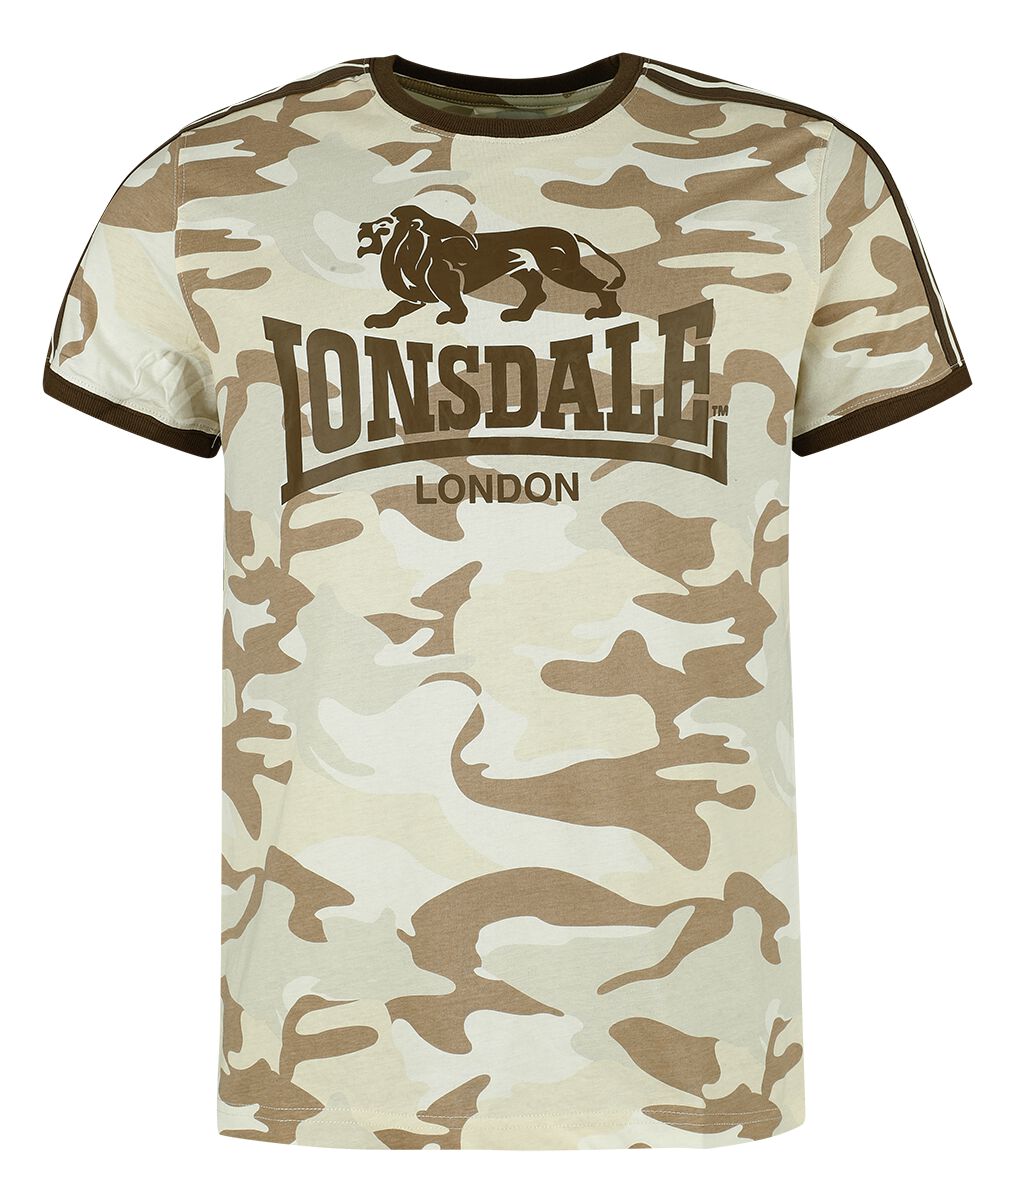 Lonsdale London - Camouflage/Flecktarn T-Shirt - CREGNEASH - S bis XXL - für Männer - Größe XL - sandcamo